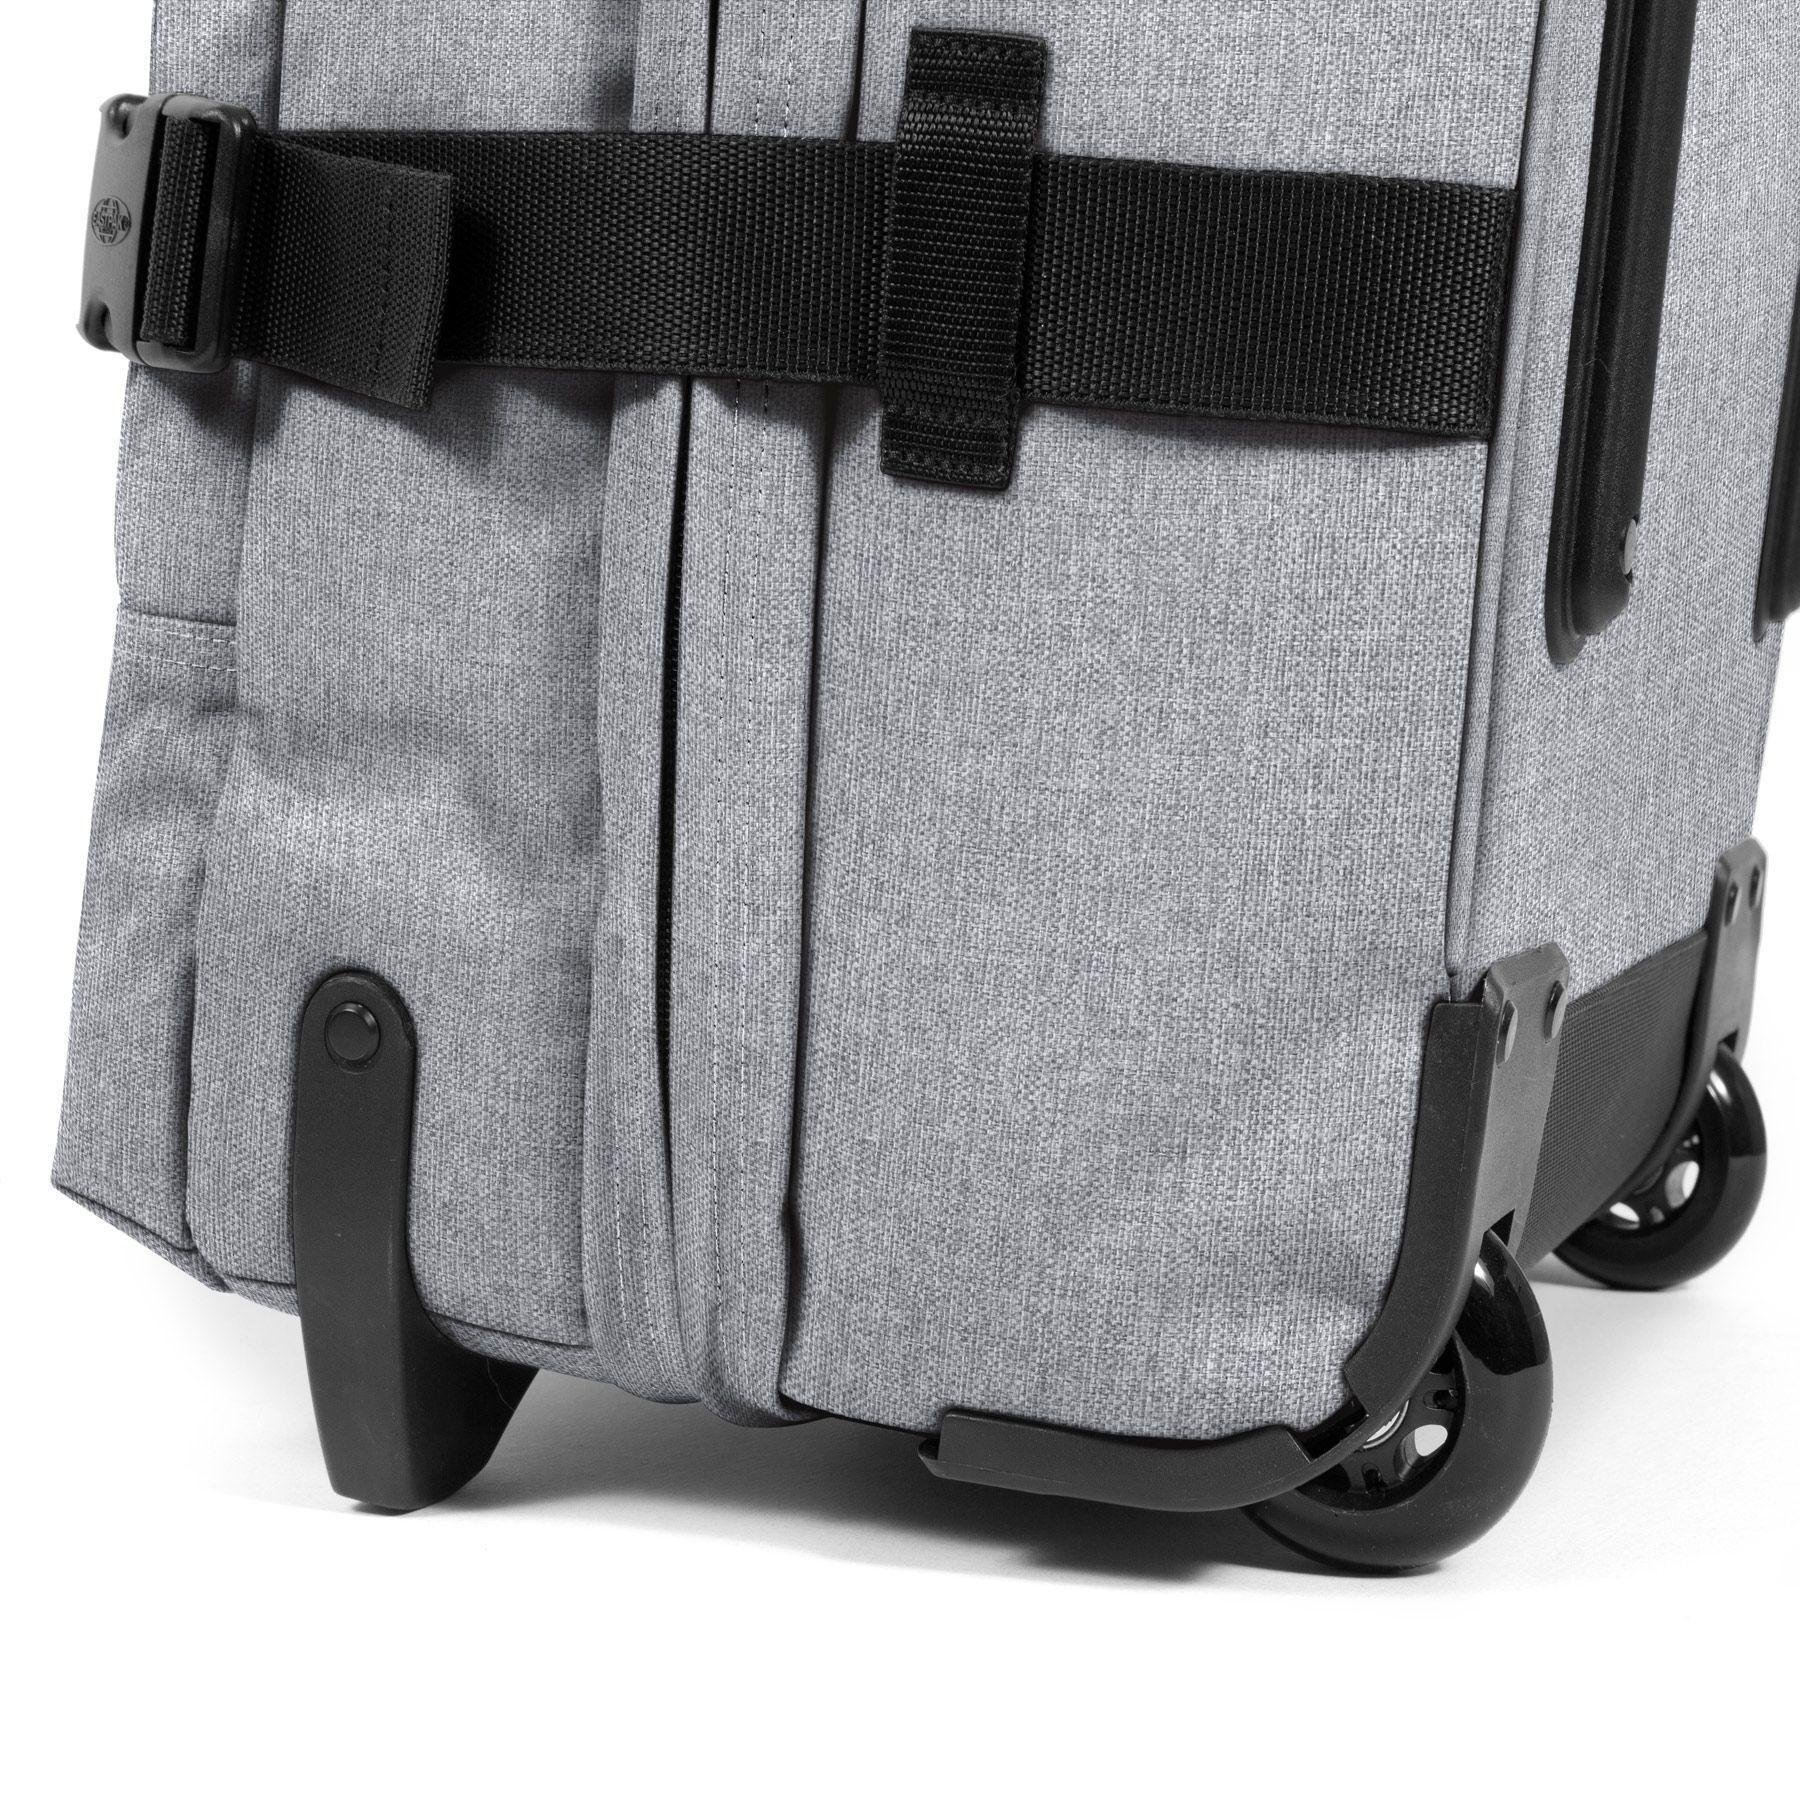 Travel bag Eastpak Tranverz M